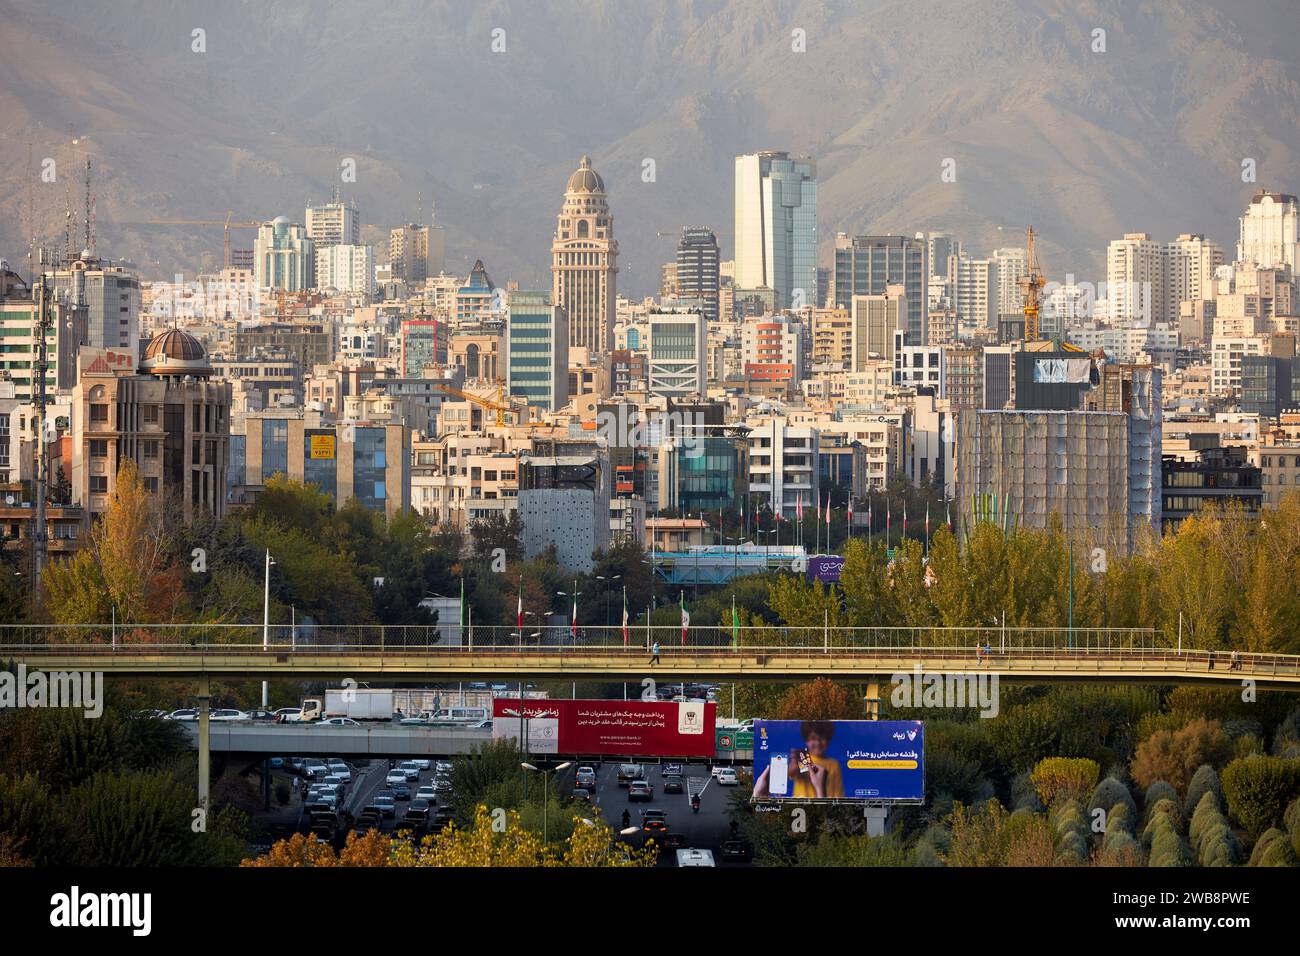 Vue panoramique de la partie nord de la ville de Téhéran depuis le pont de Tabiat. Téhéran, Iran. Banque D'Images